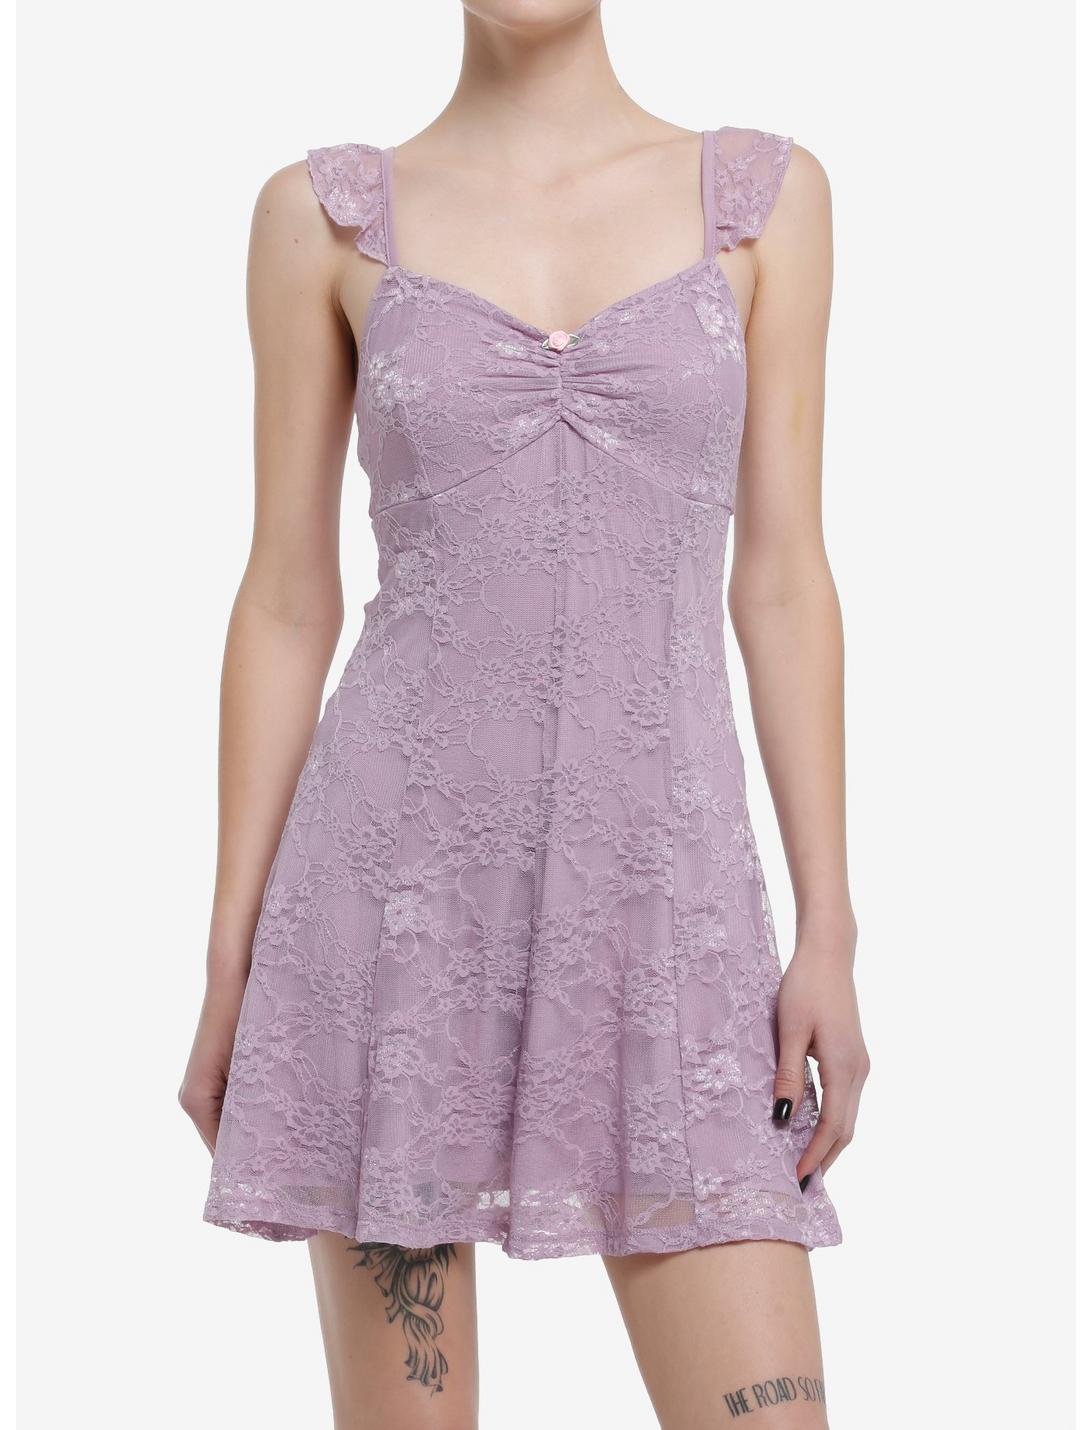 Lilac Lace Lace-up Cami Dress, PURPLE, hi-res